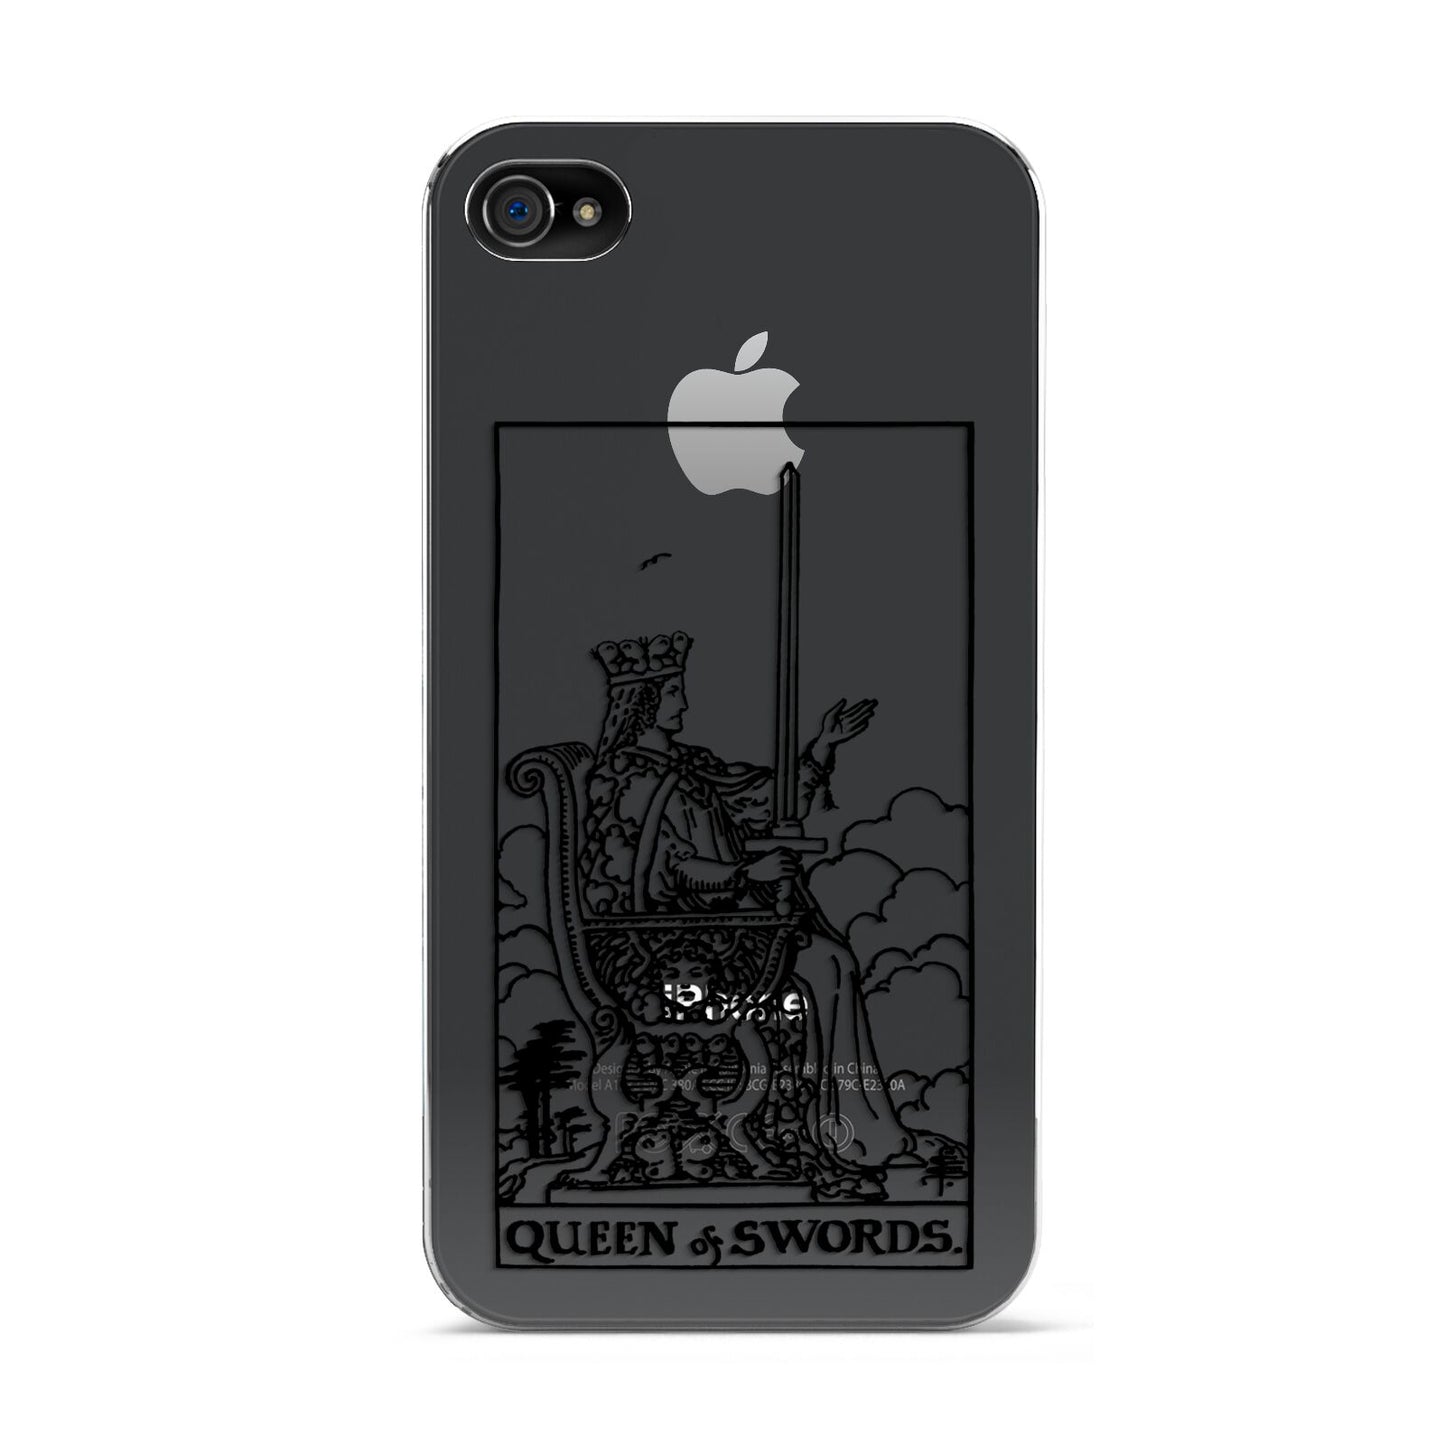 Queen of Swords Monochrome Apple iPhone 4s Case